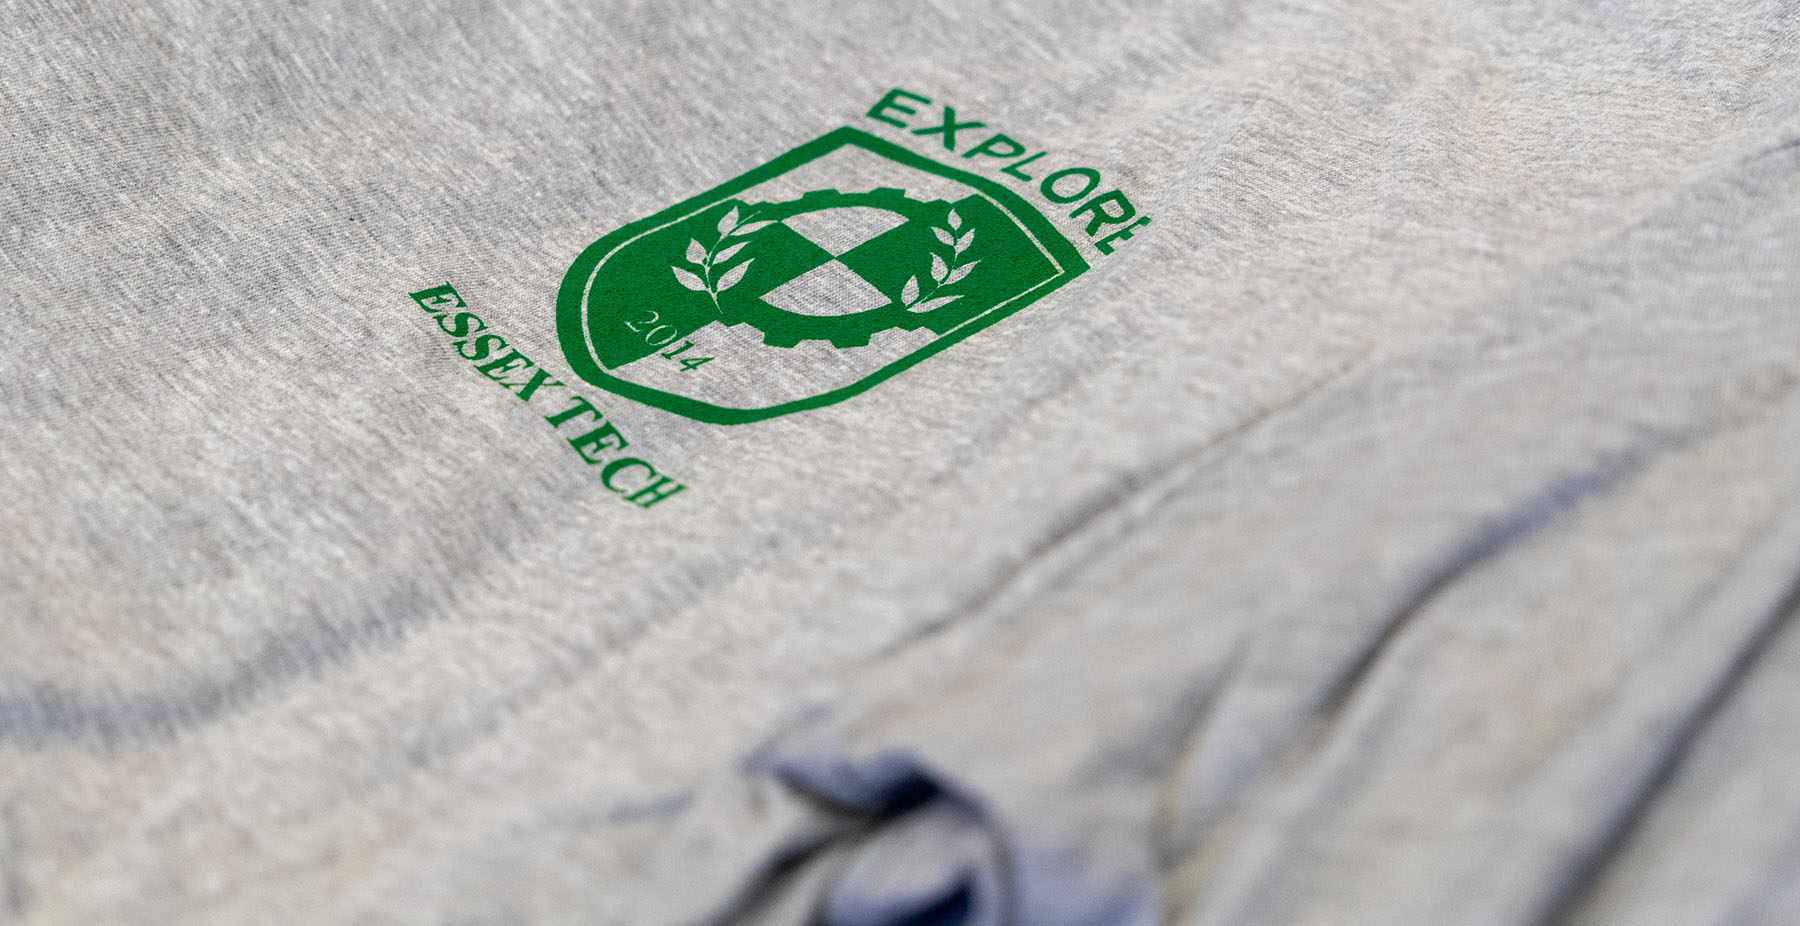 Camiseta con estampado del logo del colegio y la palabra "explorar".